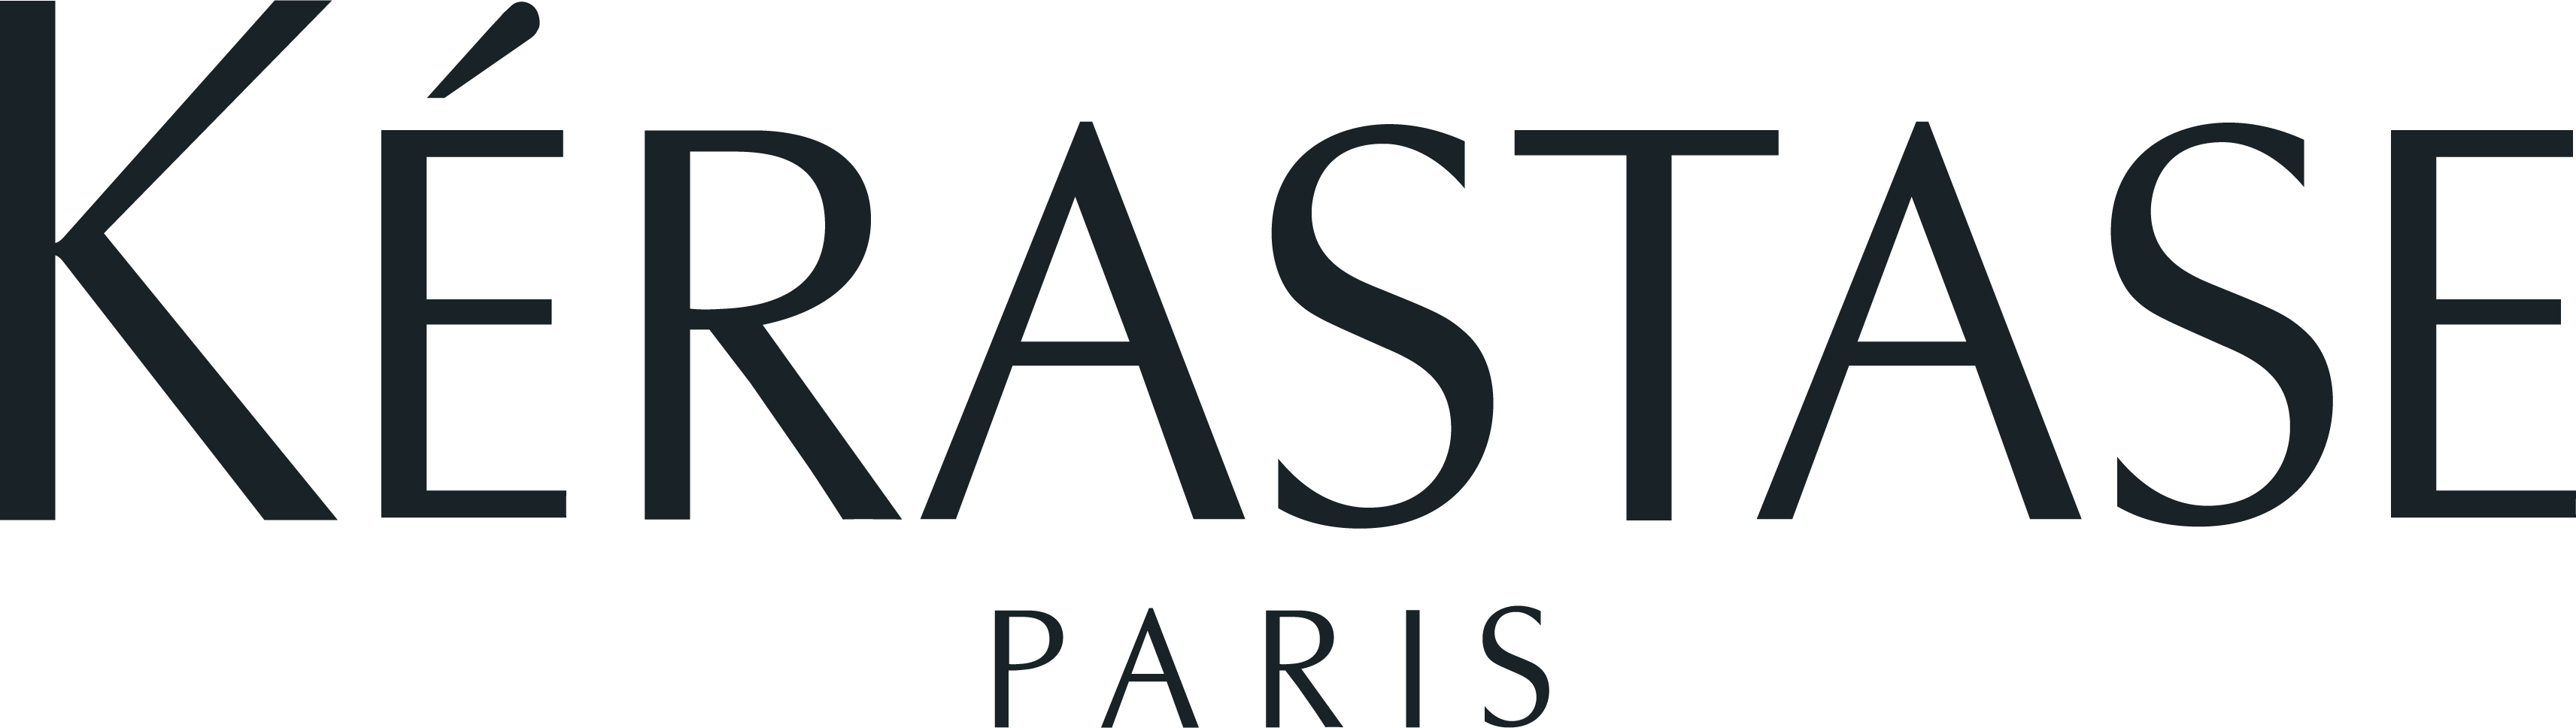 Kerastase-Paris-Logo